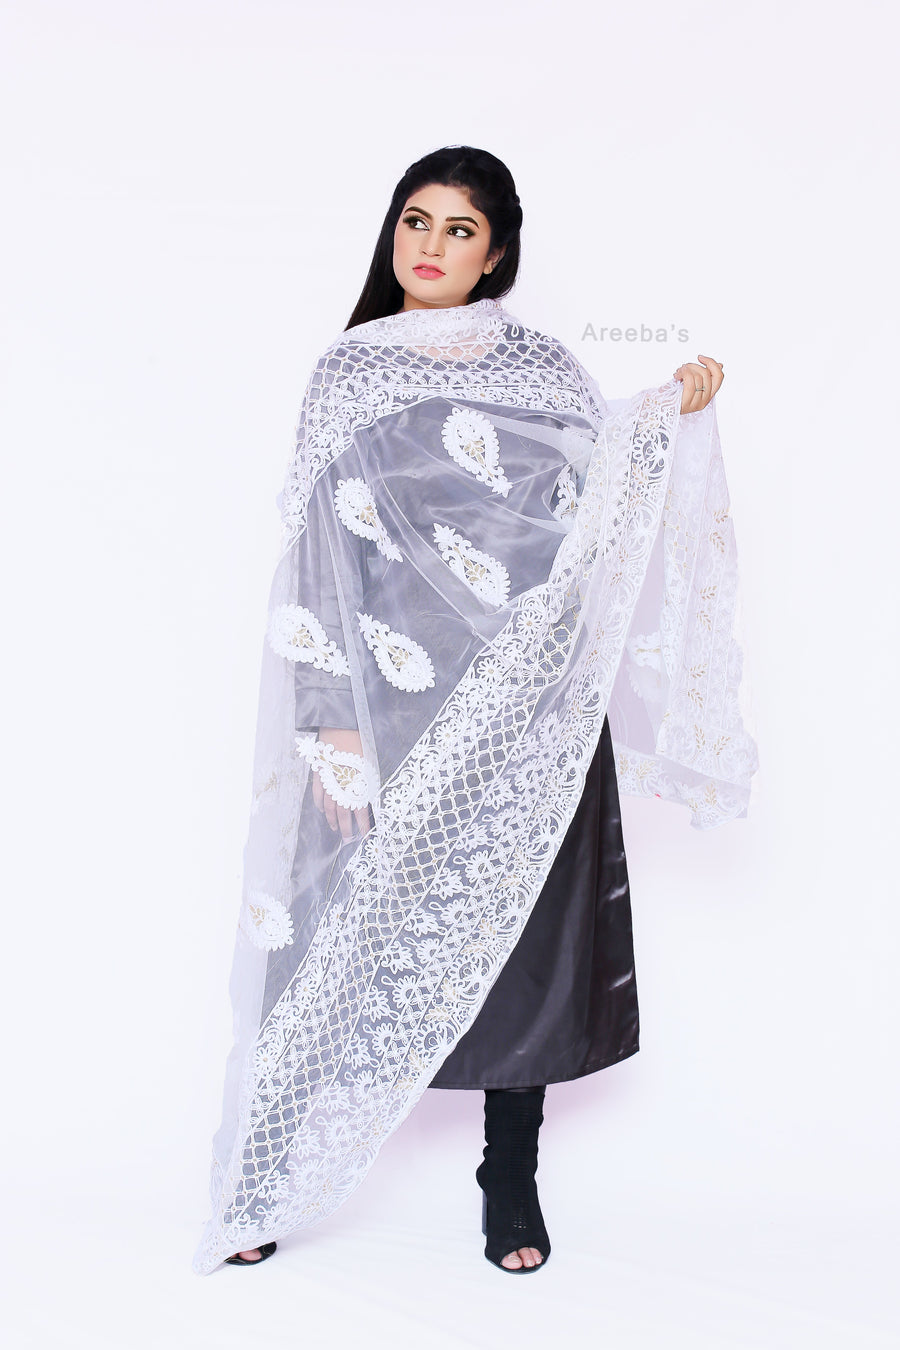 White net- Areeba's Couture